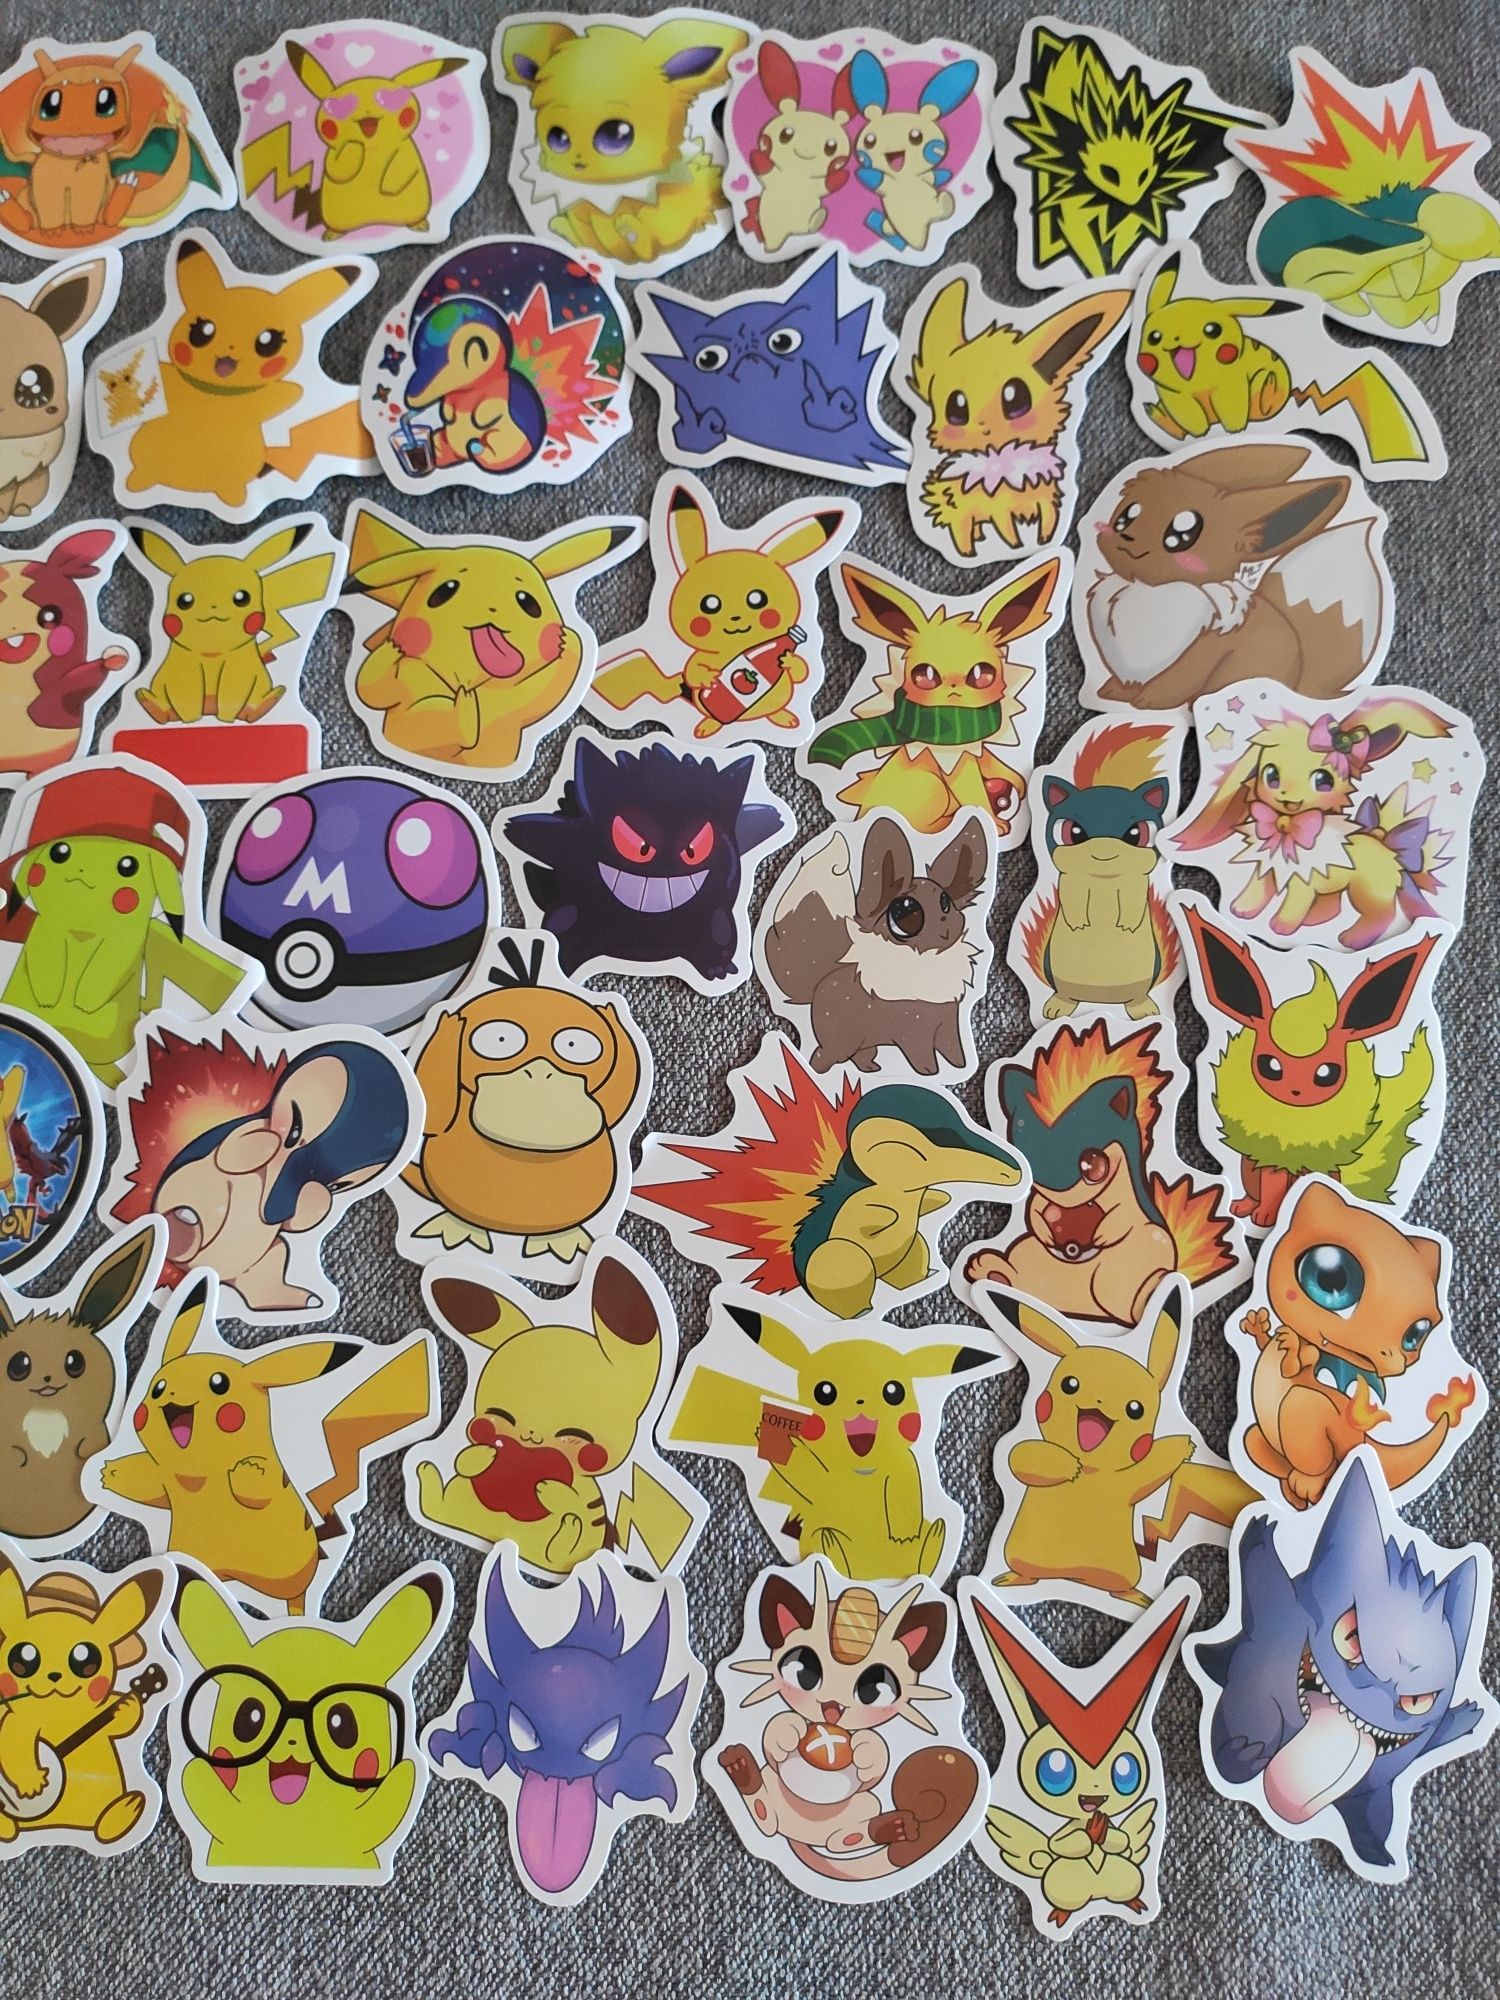 Naklejki Pokemon Pikachu 50 sztuk